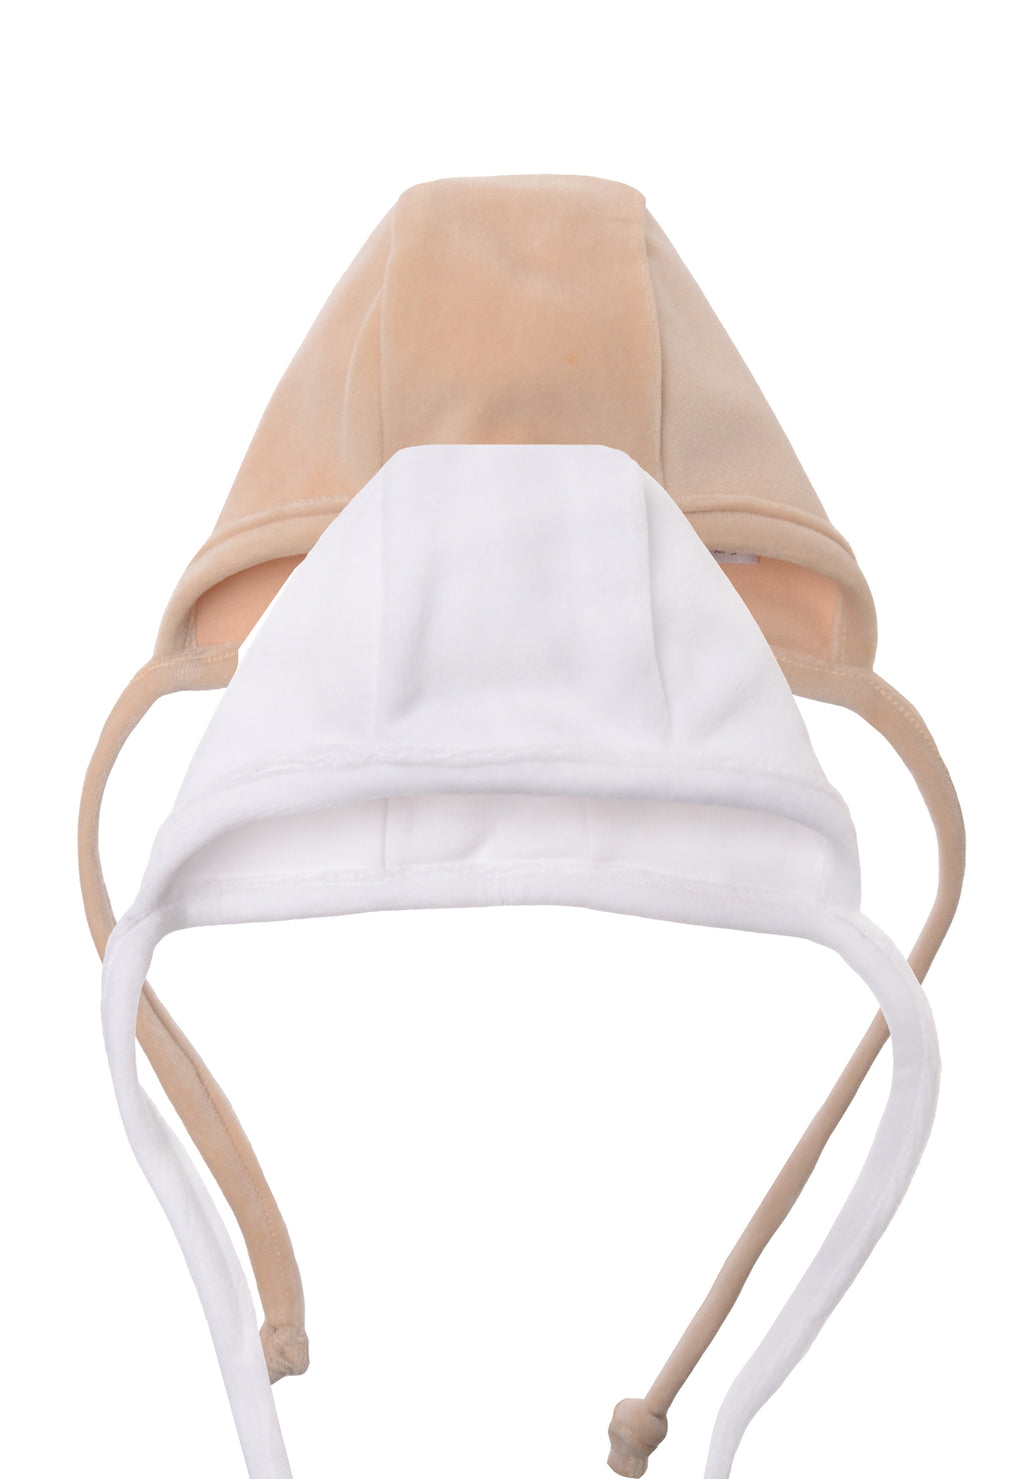 Doppelpack Babymützen in beige und weiß aus weichem Velour Material.